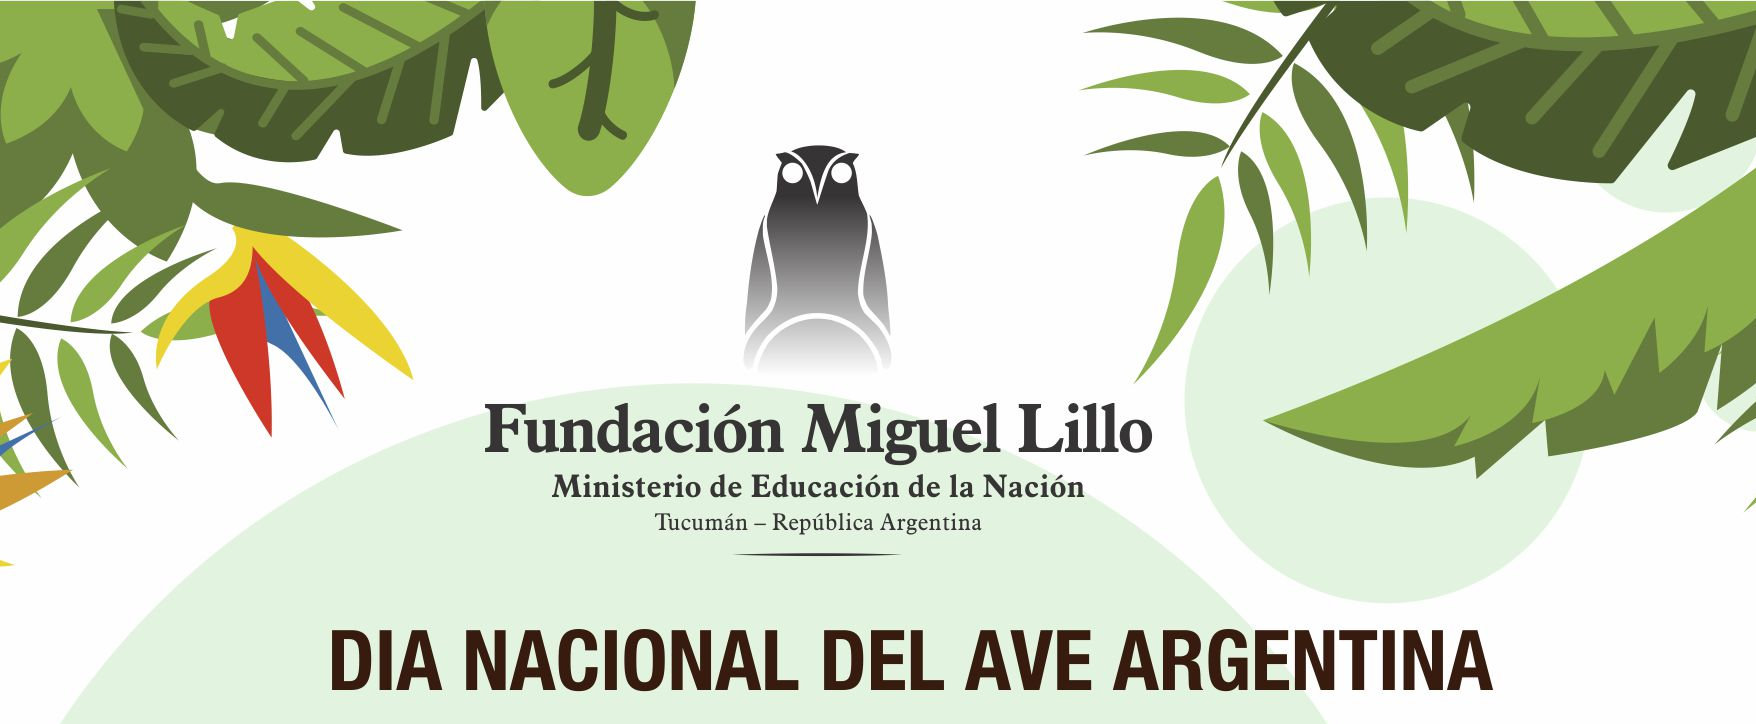 Día Nacional del Ave Argentina (Fundación Miguel Lillo)